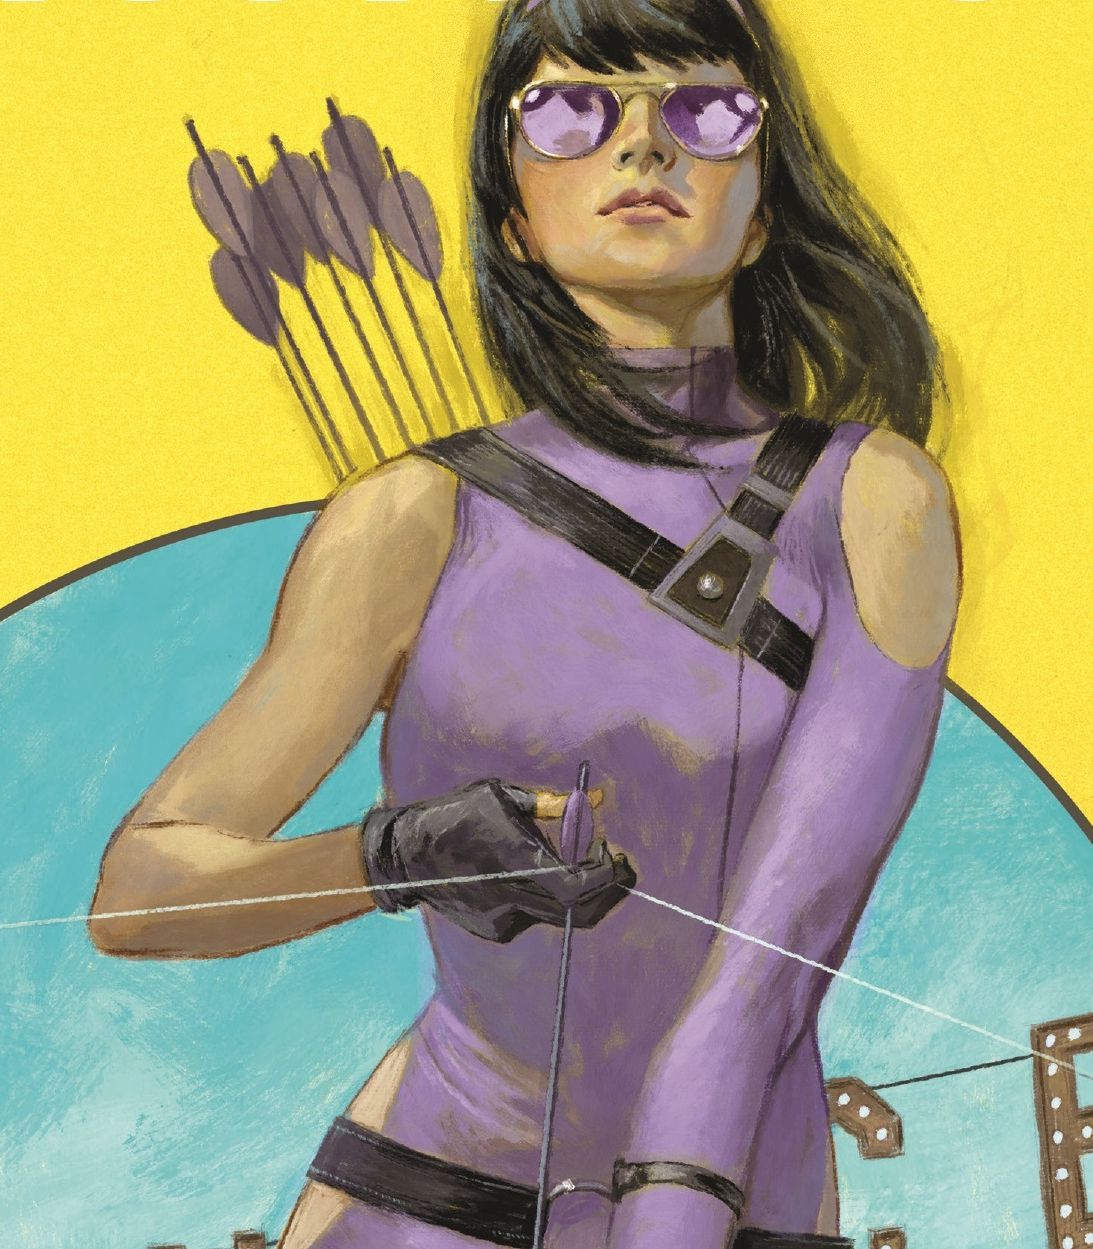 Hawkeye Kate Bishop by Leonardo Romero